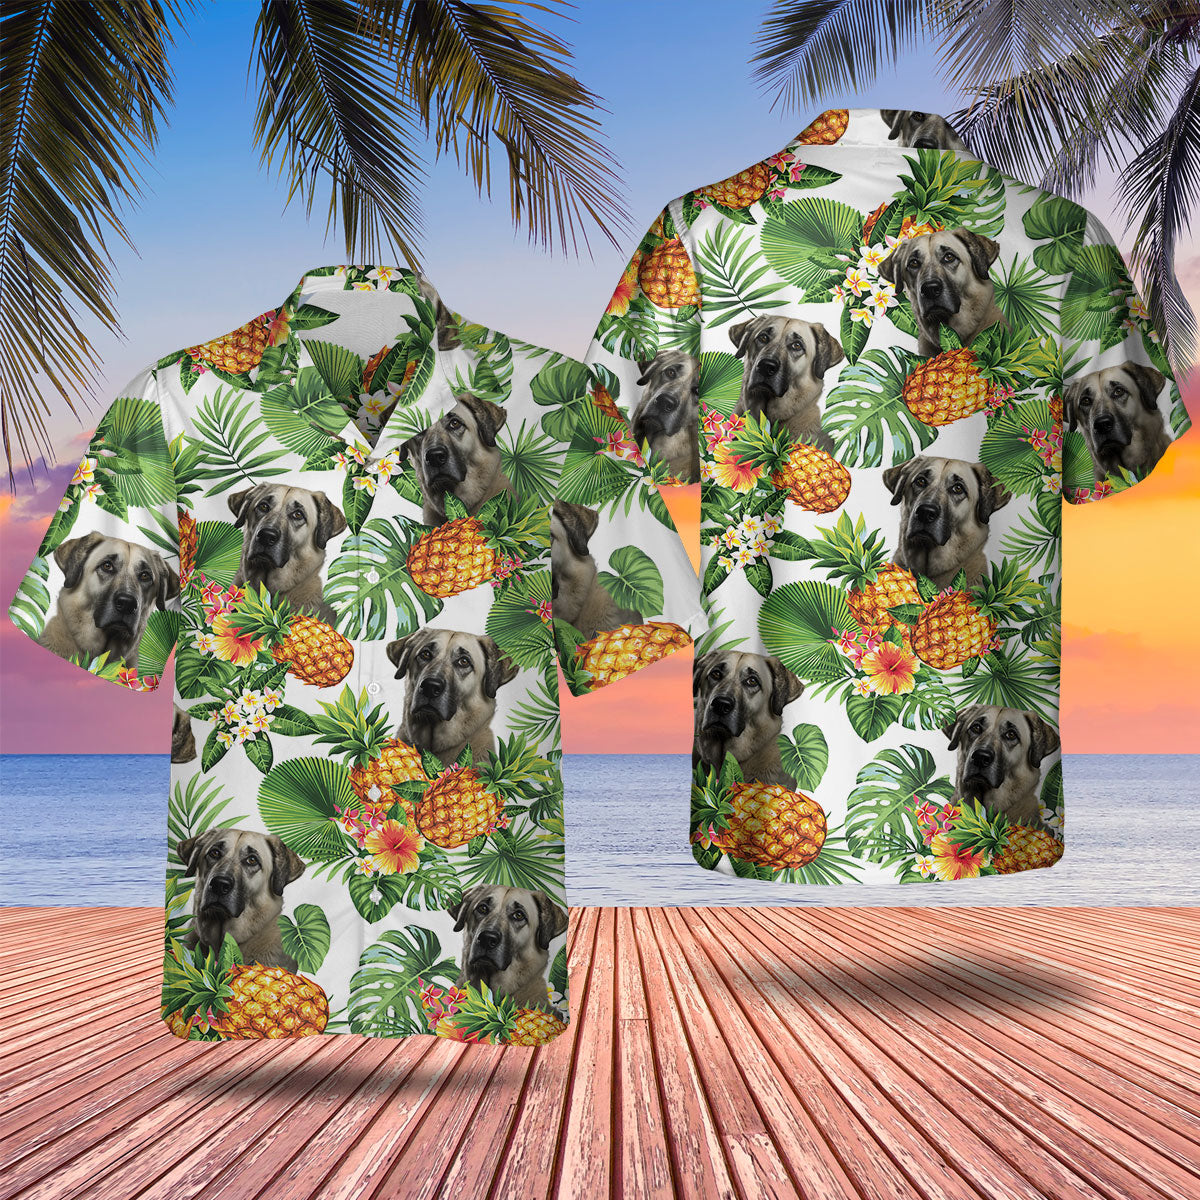 Anatolian Shepherd AI - Tropical Pattern Hawaiian Shirt